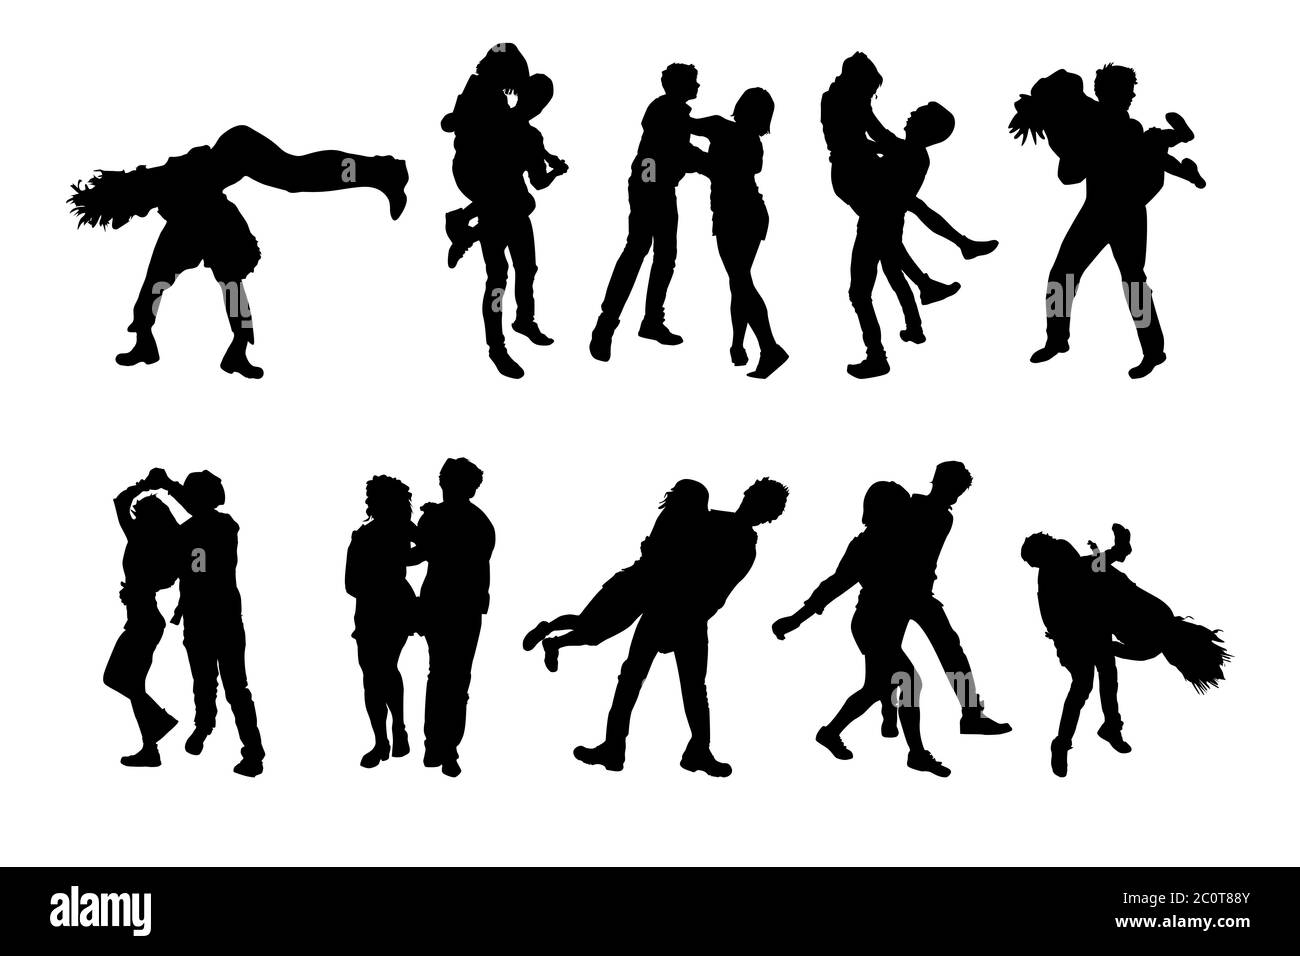 Satz von tanzenden Paaren Silhouetten isoliert auf weißem Hintergrund.Menschen auf Straße Tanz Party.Junge Paare tanzen rocknroll.Stock Vektor-Illustration Stock Vektor